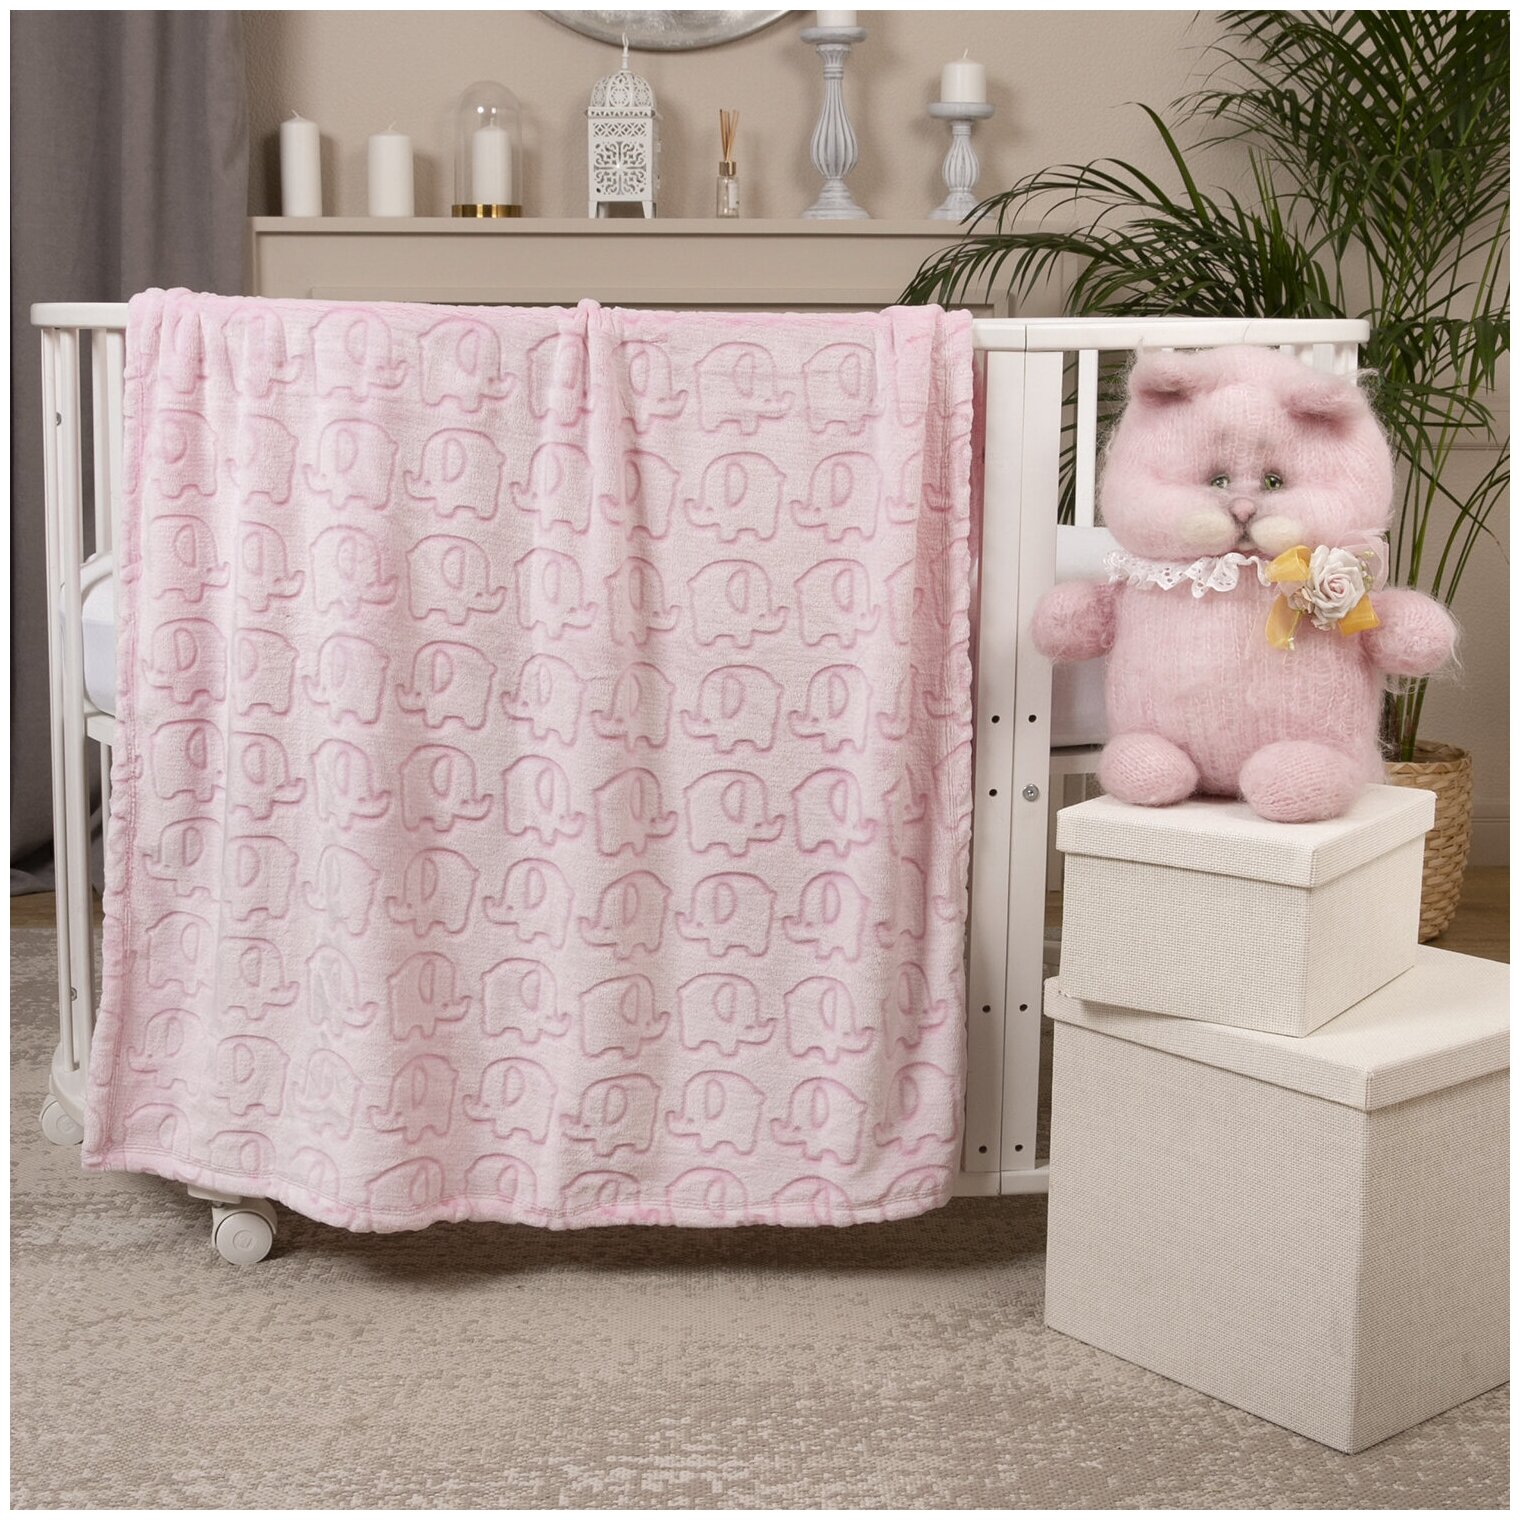 Плед детский для новорожденных теплый плюшевый 100х118 см розовый Маленький Мягкий, на выписку, в коляску, одеяло для малыша Велсофт "Слонки" Baby Nice